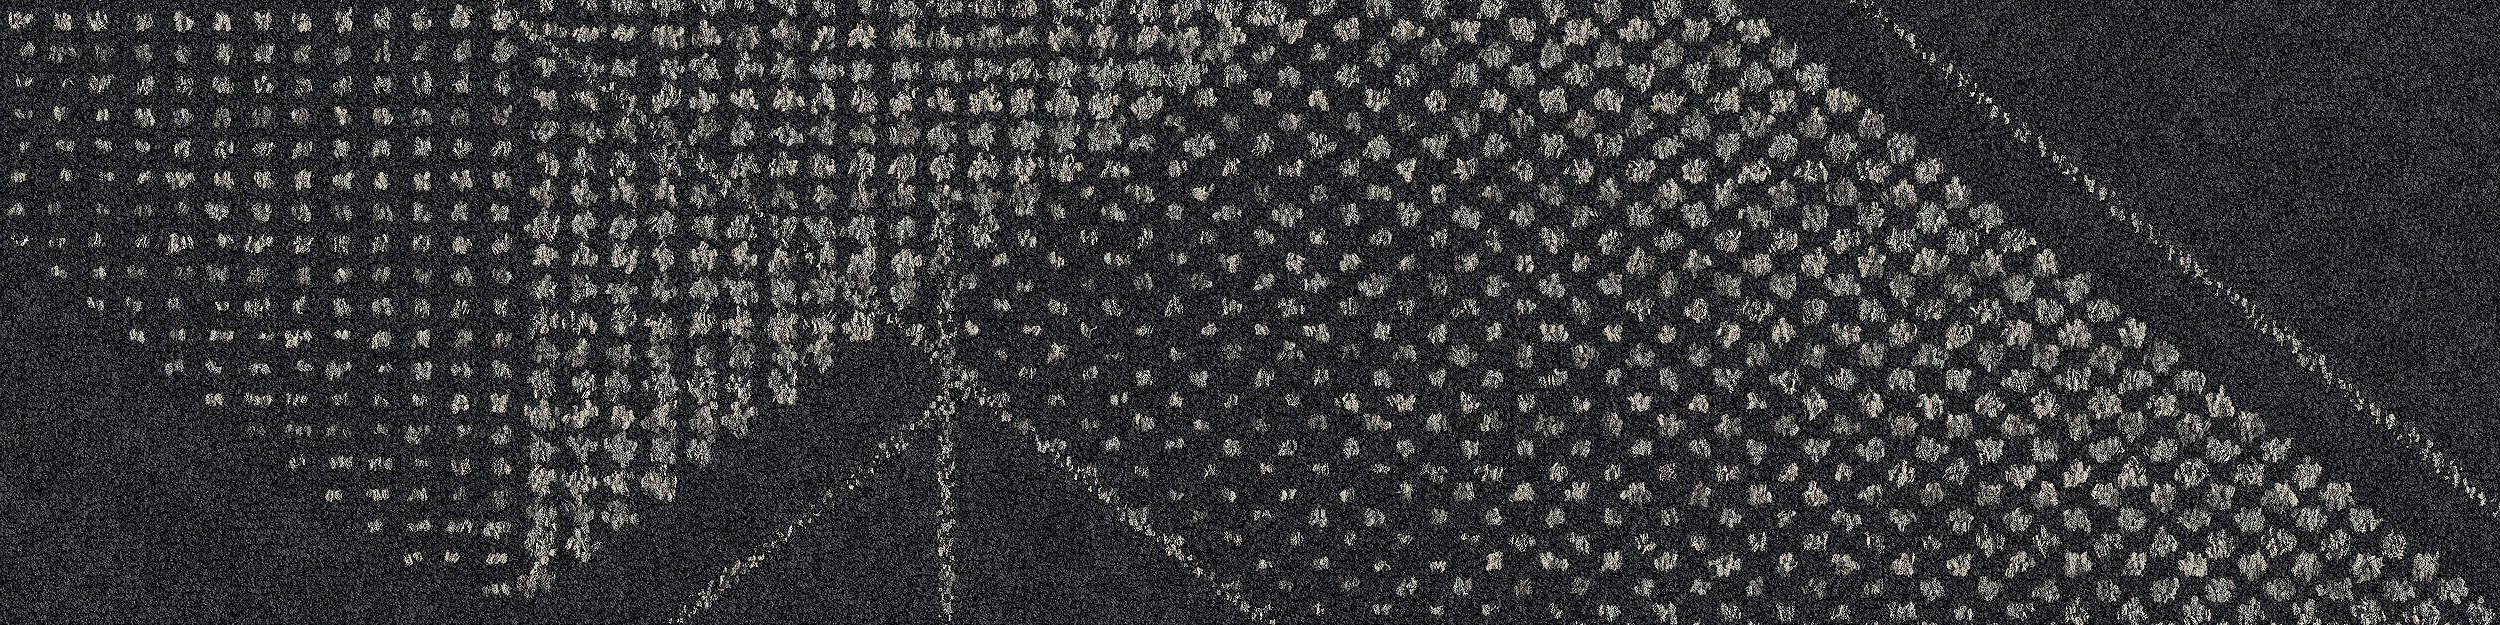 Spandrel Carpet Tile In Carbon imagen número 7